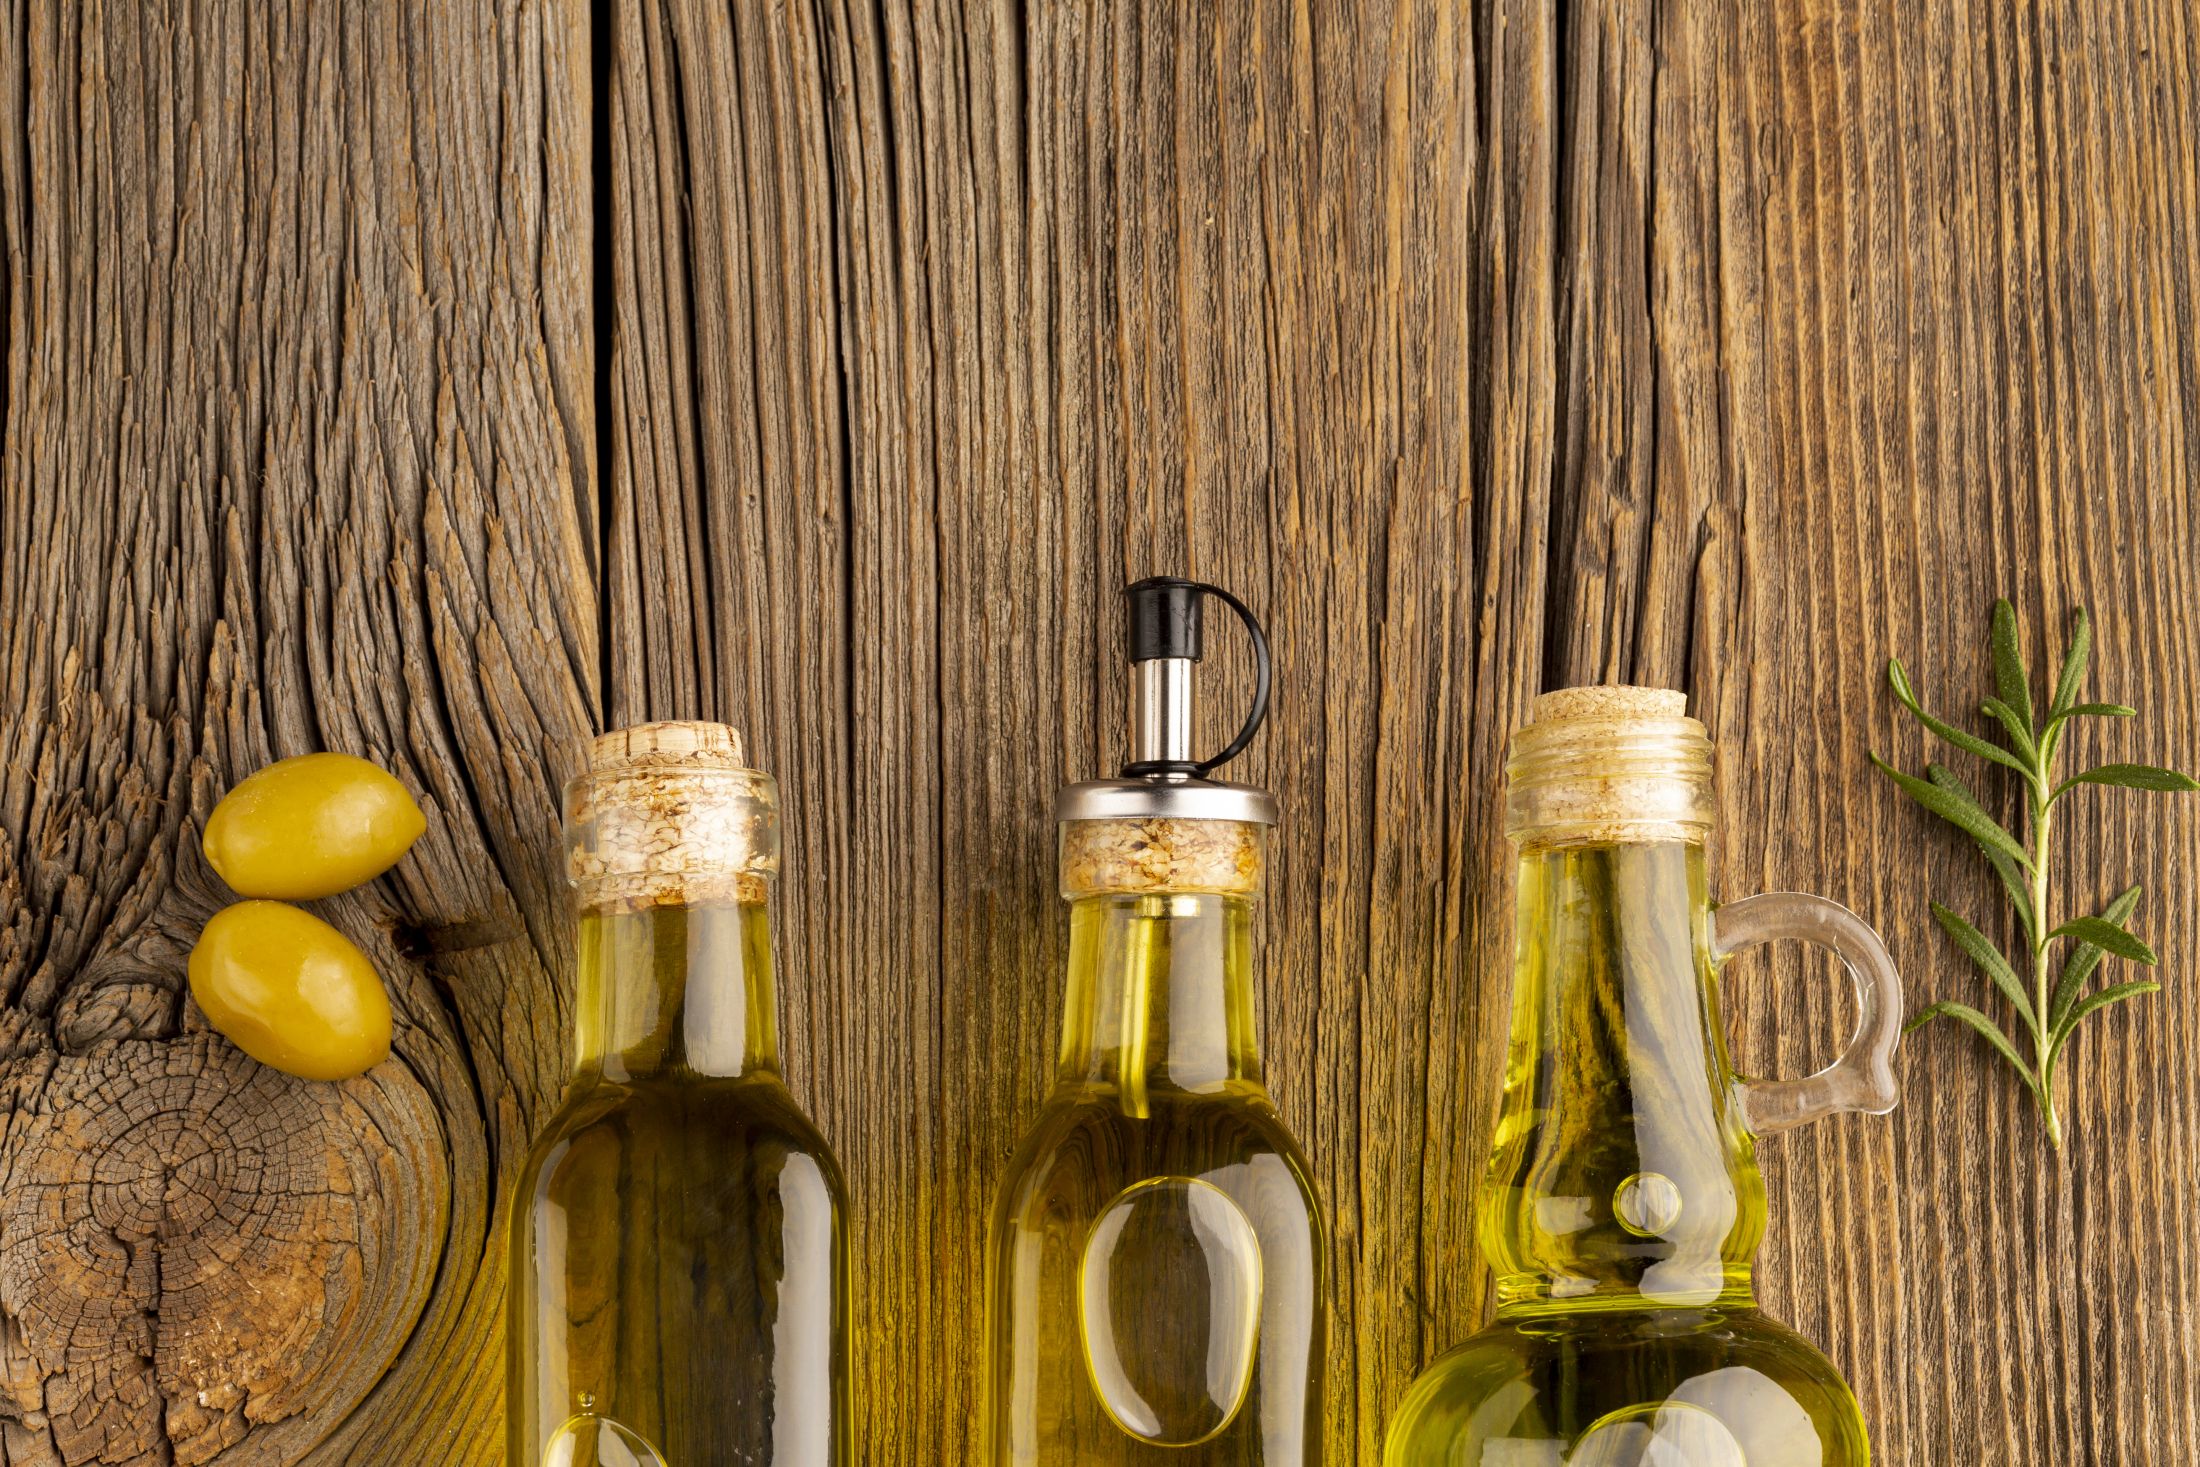 yellow-olives-oil-bottles-wooden-background.jpg